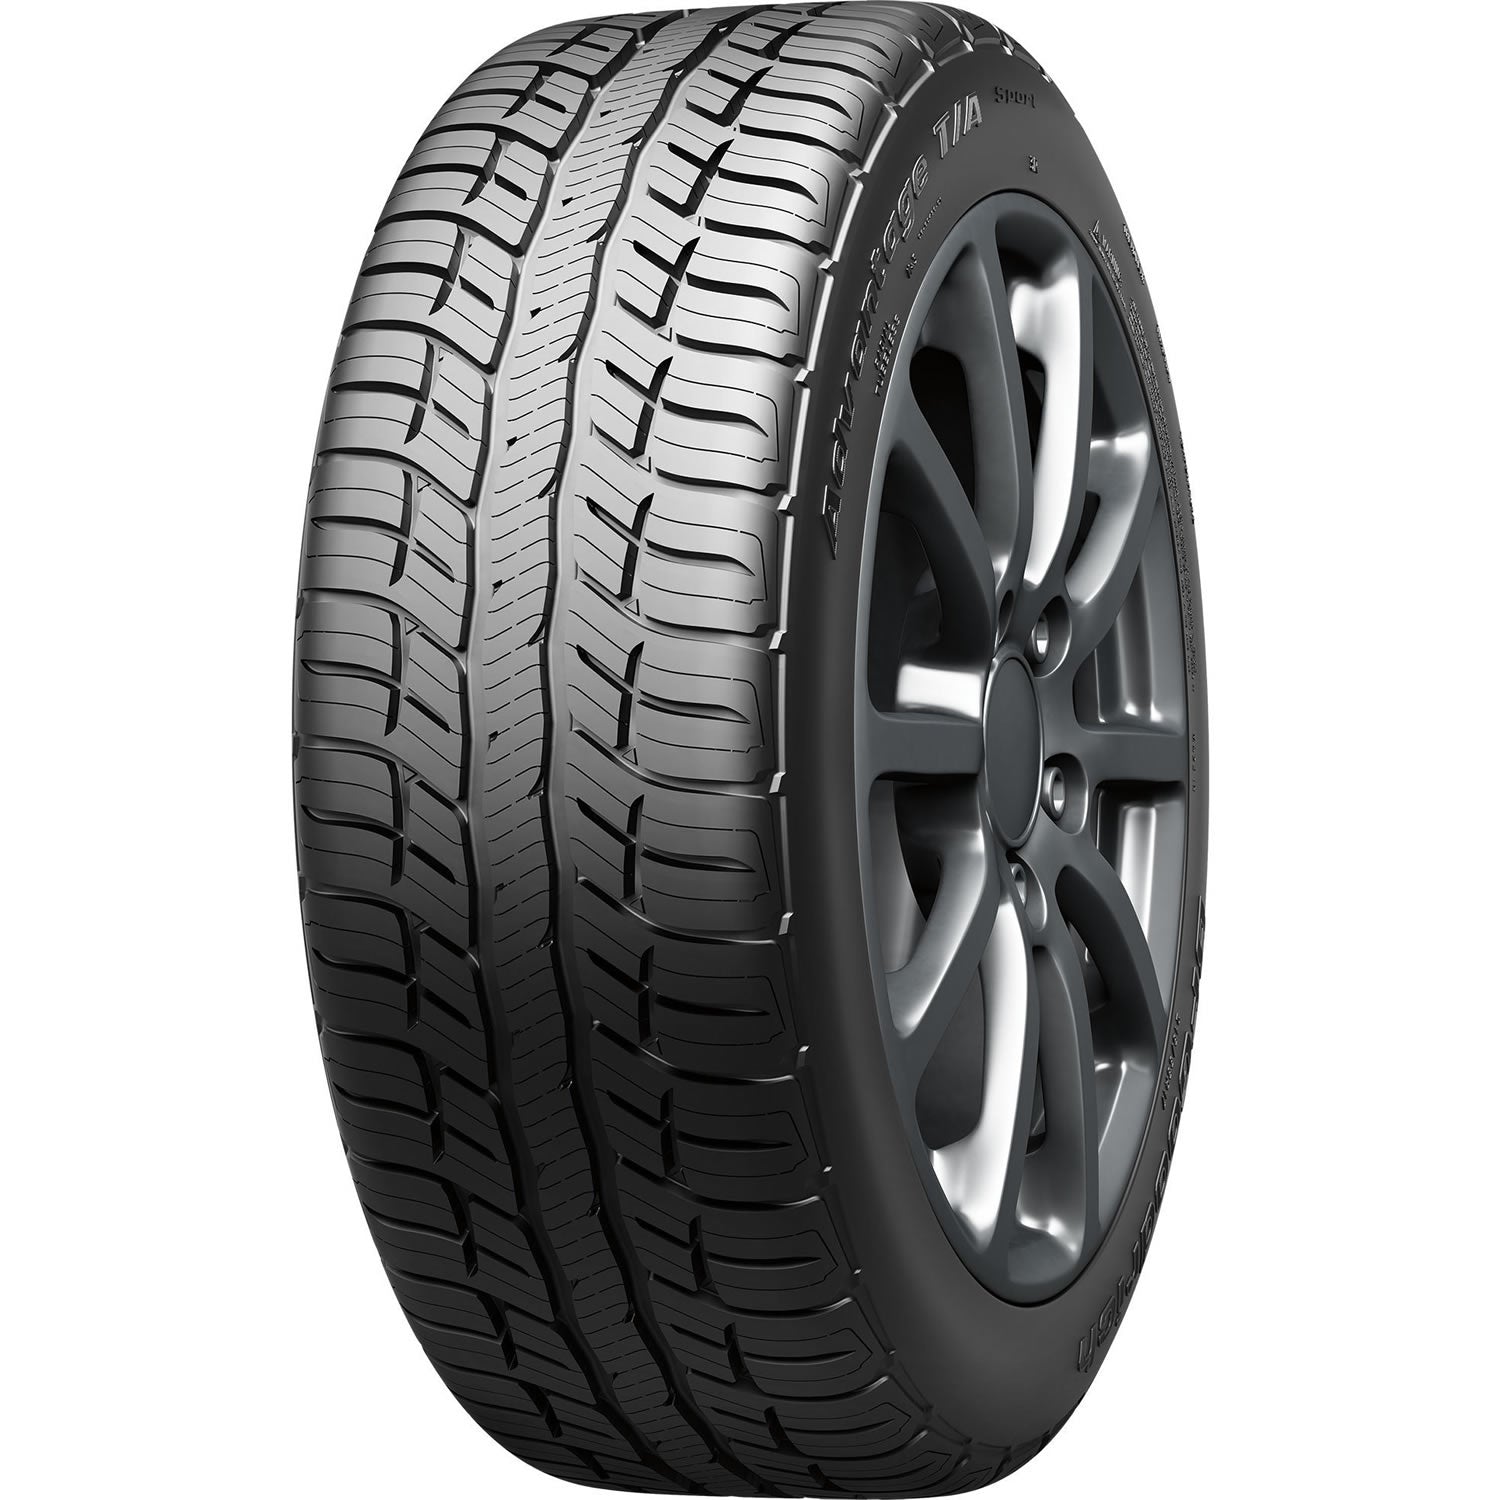 BFGOODRICH ADVANTAGE T/A SPORT 245/55R18 (28.6X9.7R 18) Tires